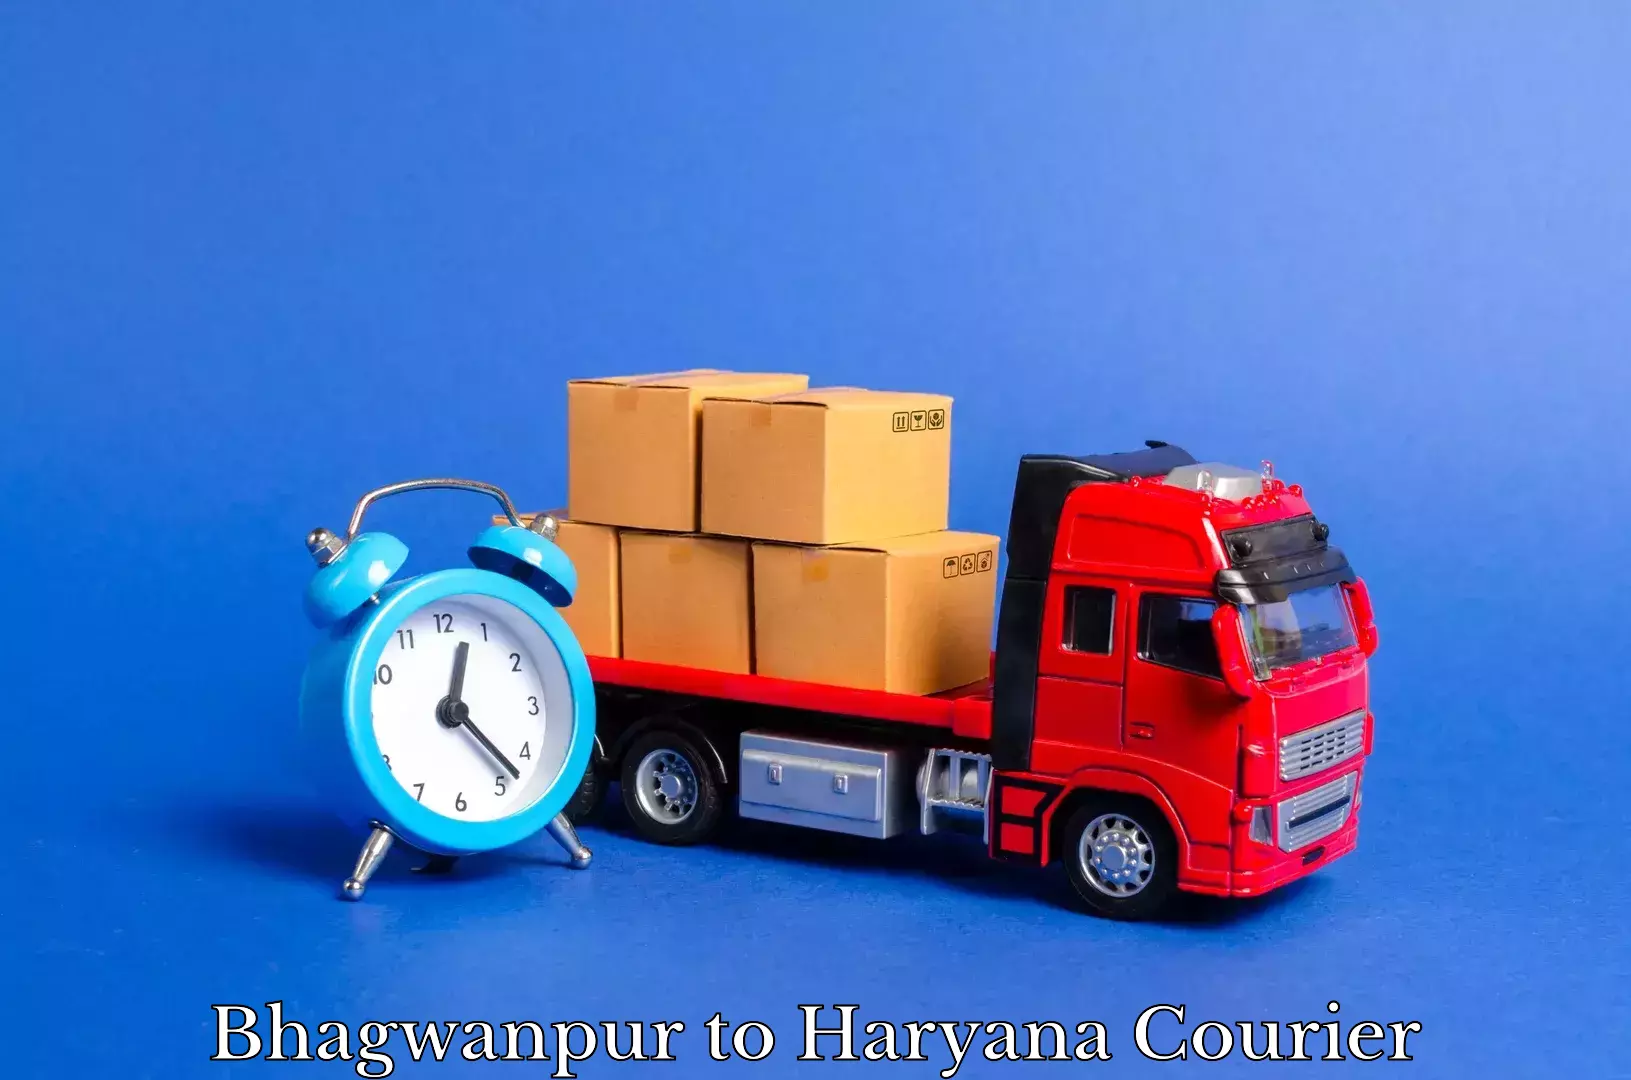 Household goods transporters Bhagwanpur to Gurugram